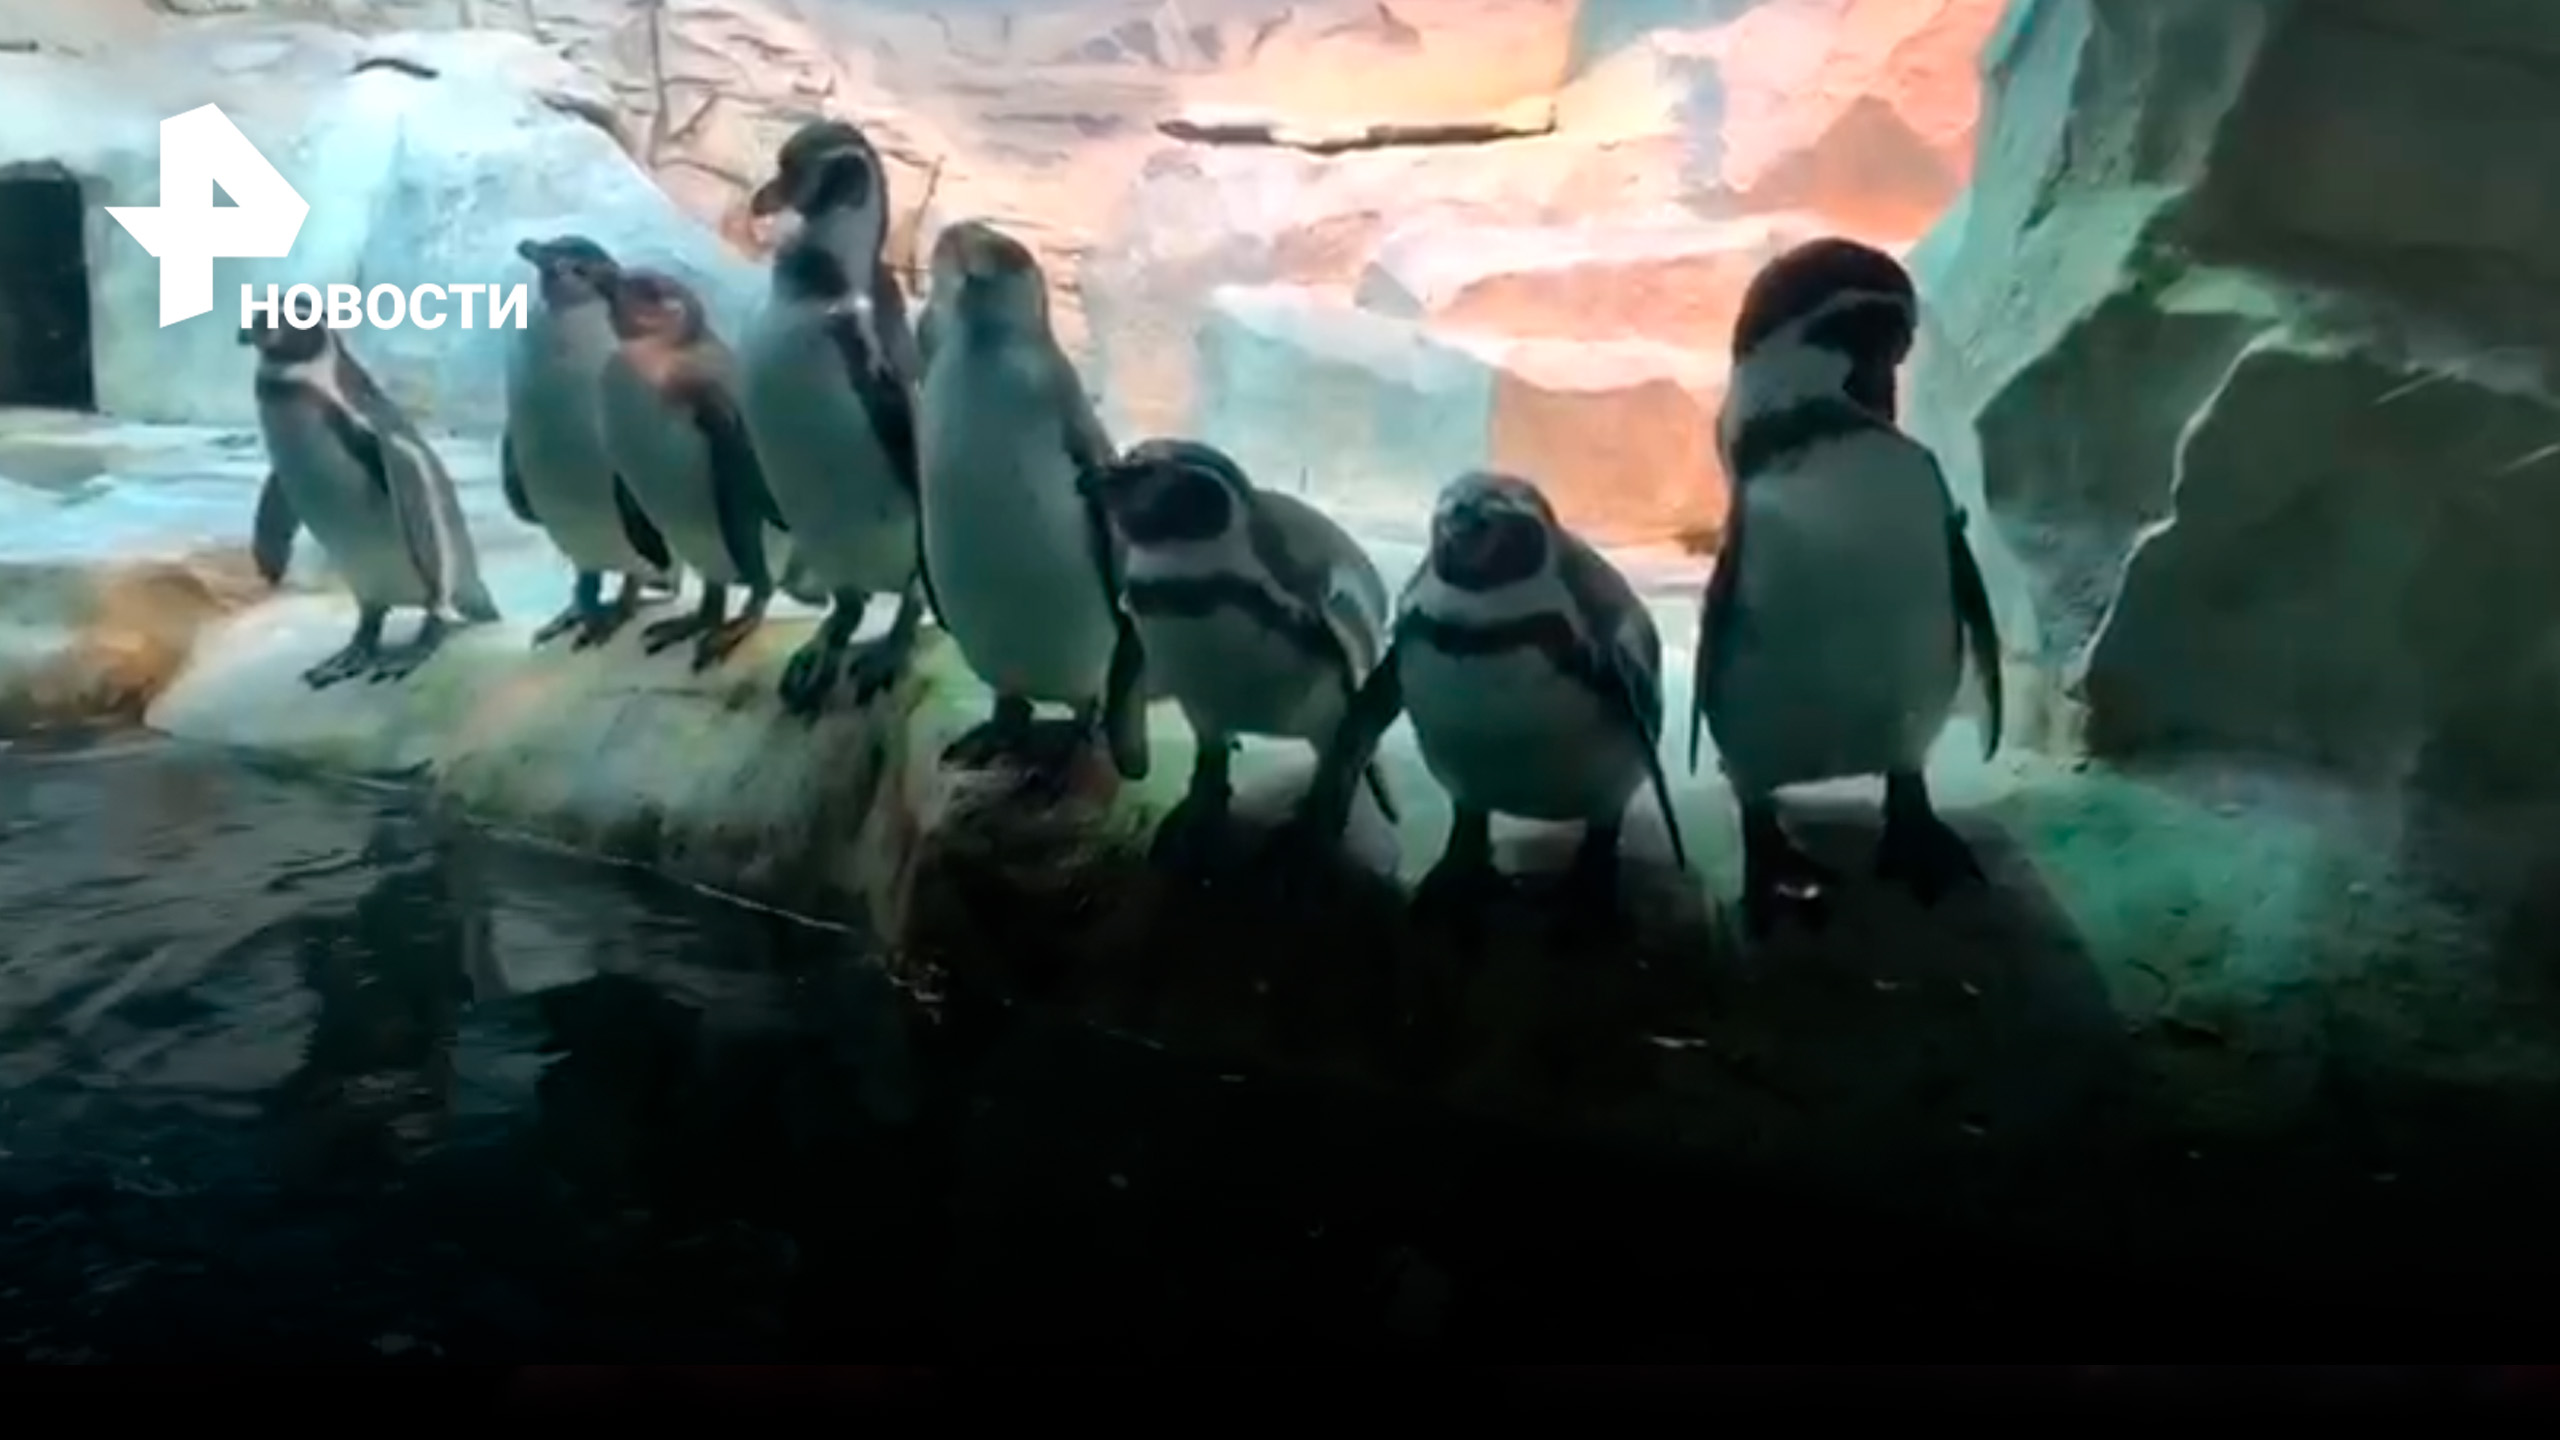 Московский зоопарк показал, как пингвины отдыхают у бассейна / РЕН Новости